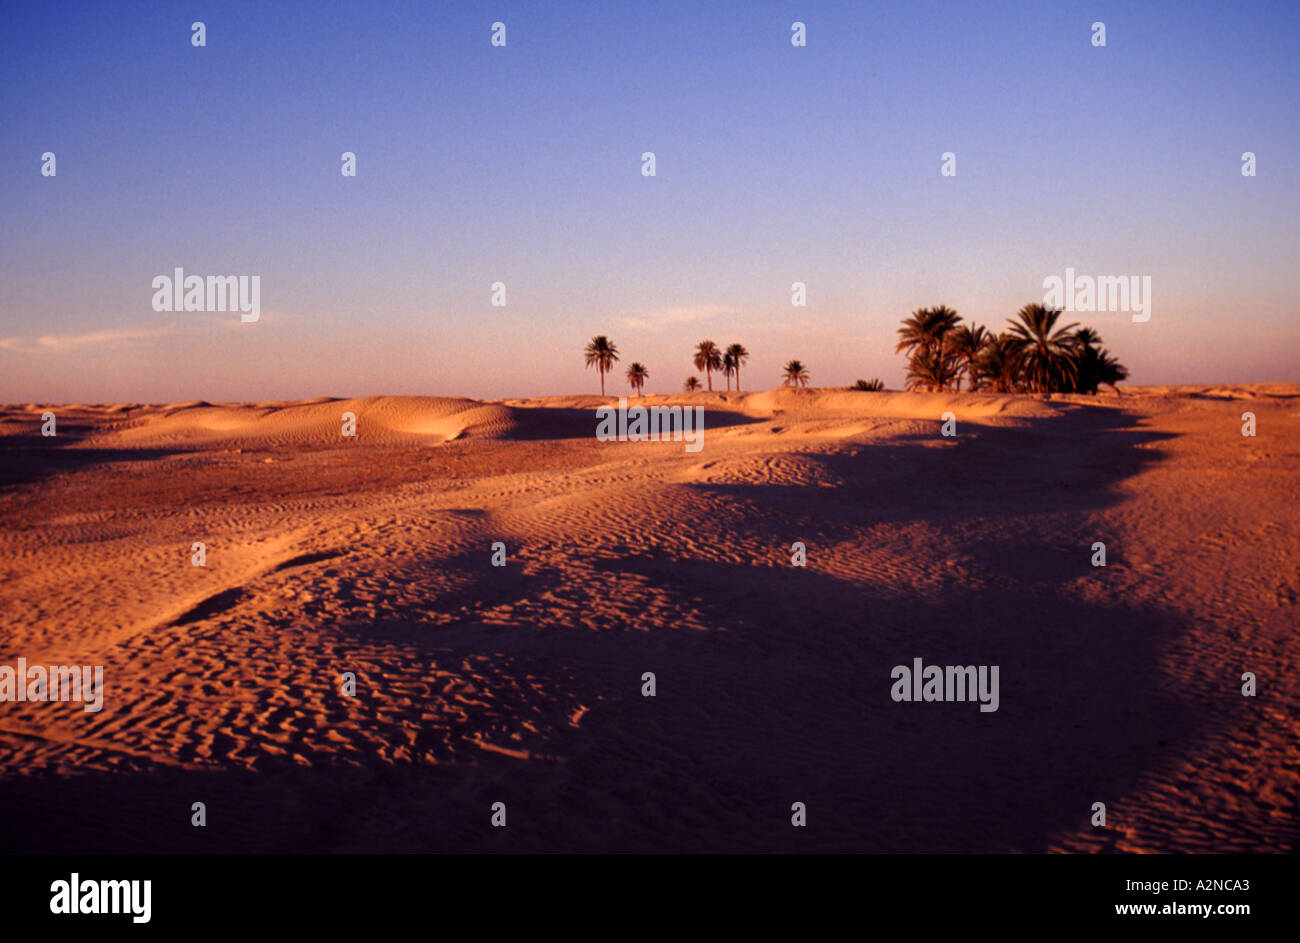 ENDLOSE Meer von SAND 01 Sahara Wüste Tunesien Afrika THIS IS 1 OF 2 ähnliche Bilder und 1 von 200 Gesamt Bilder Stockfoto